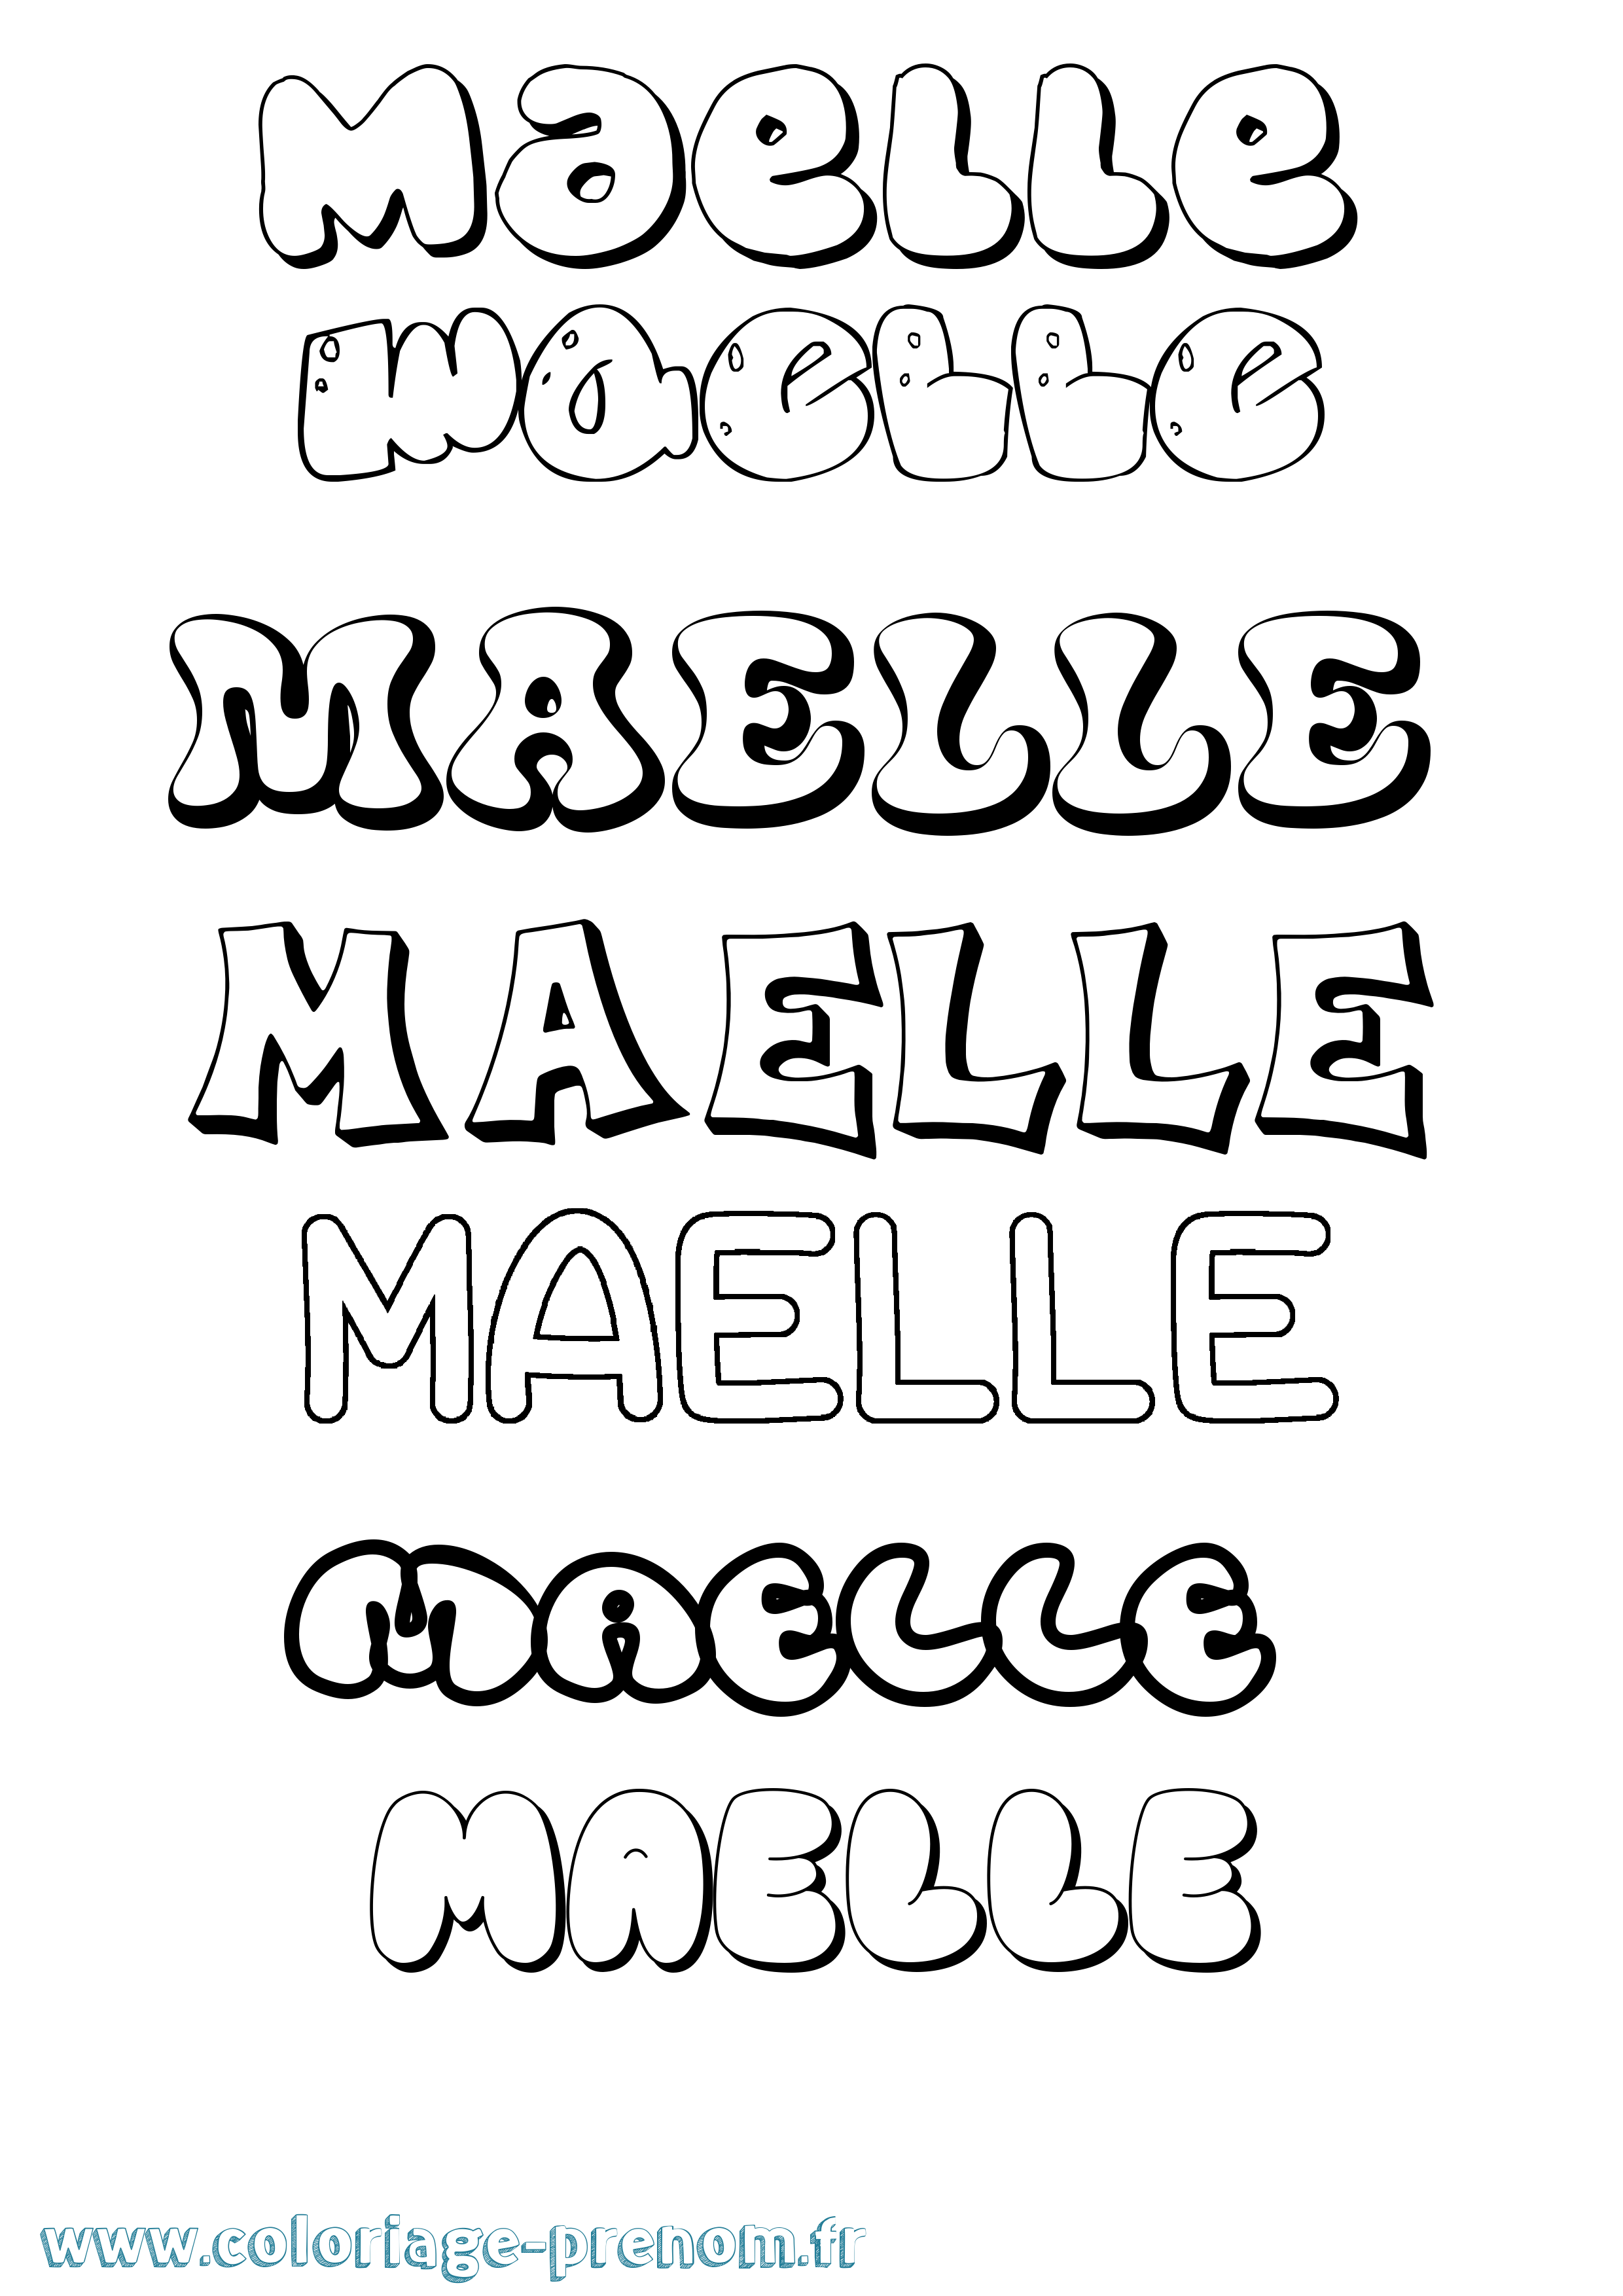 Coloriage prénom Maelle Bubble